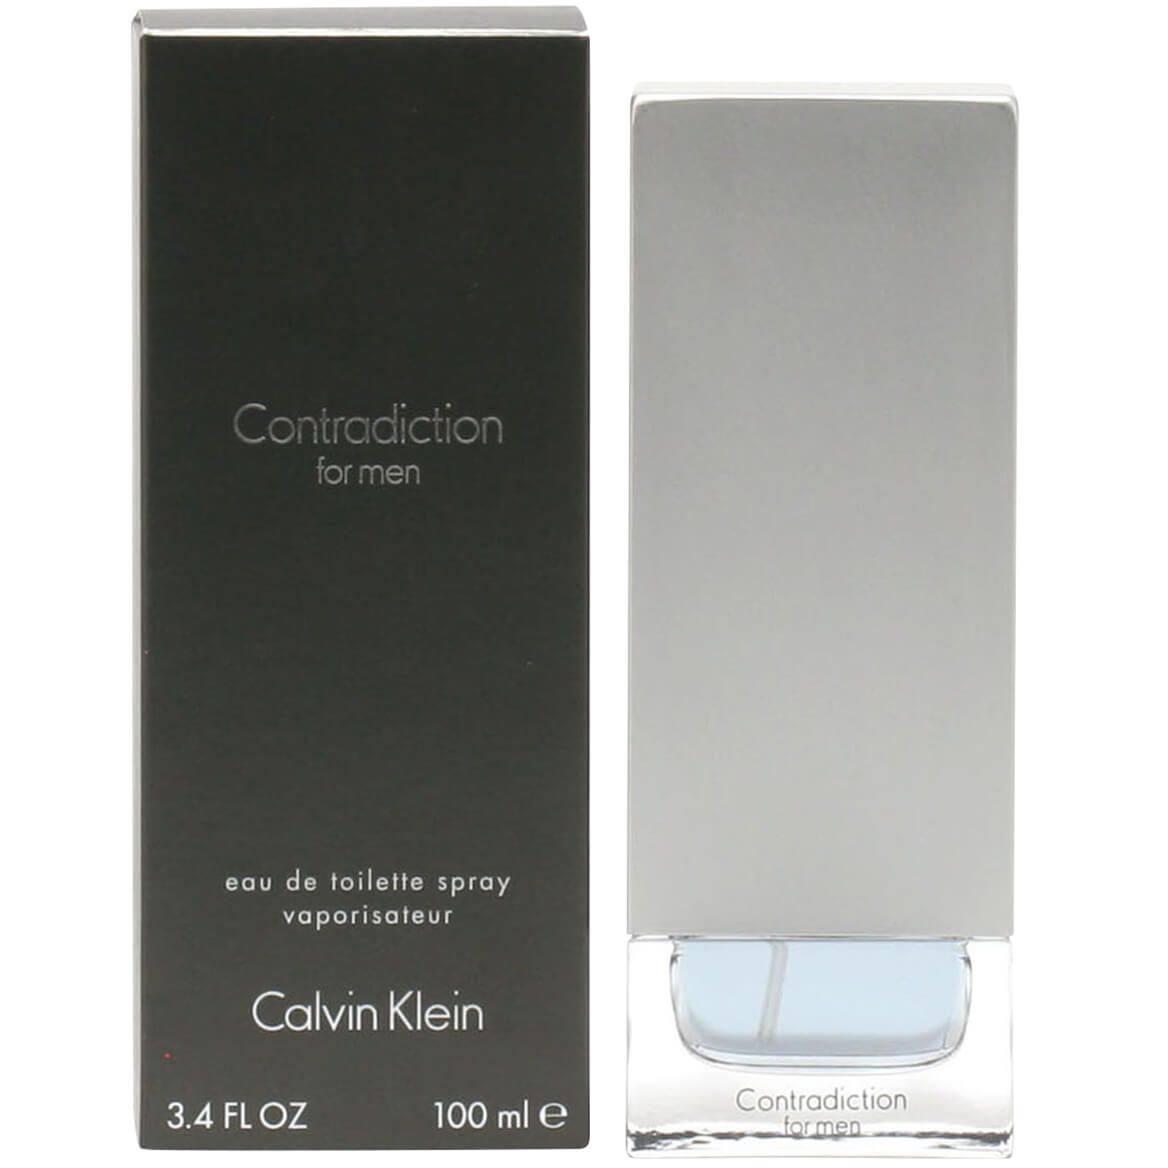 Contradiction For Men by Calvin Klein, EDT Spray + '-' + 352079